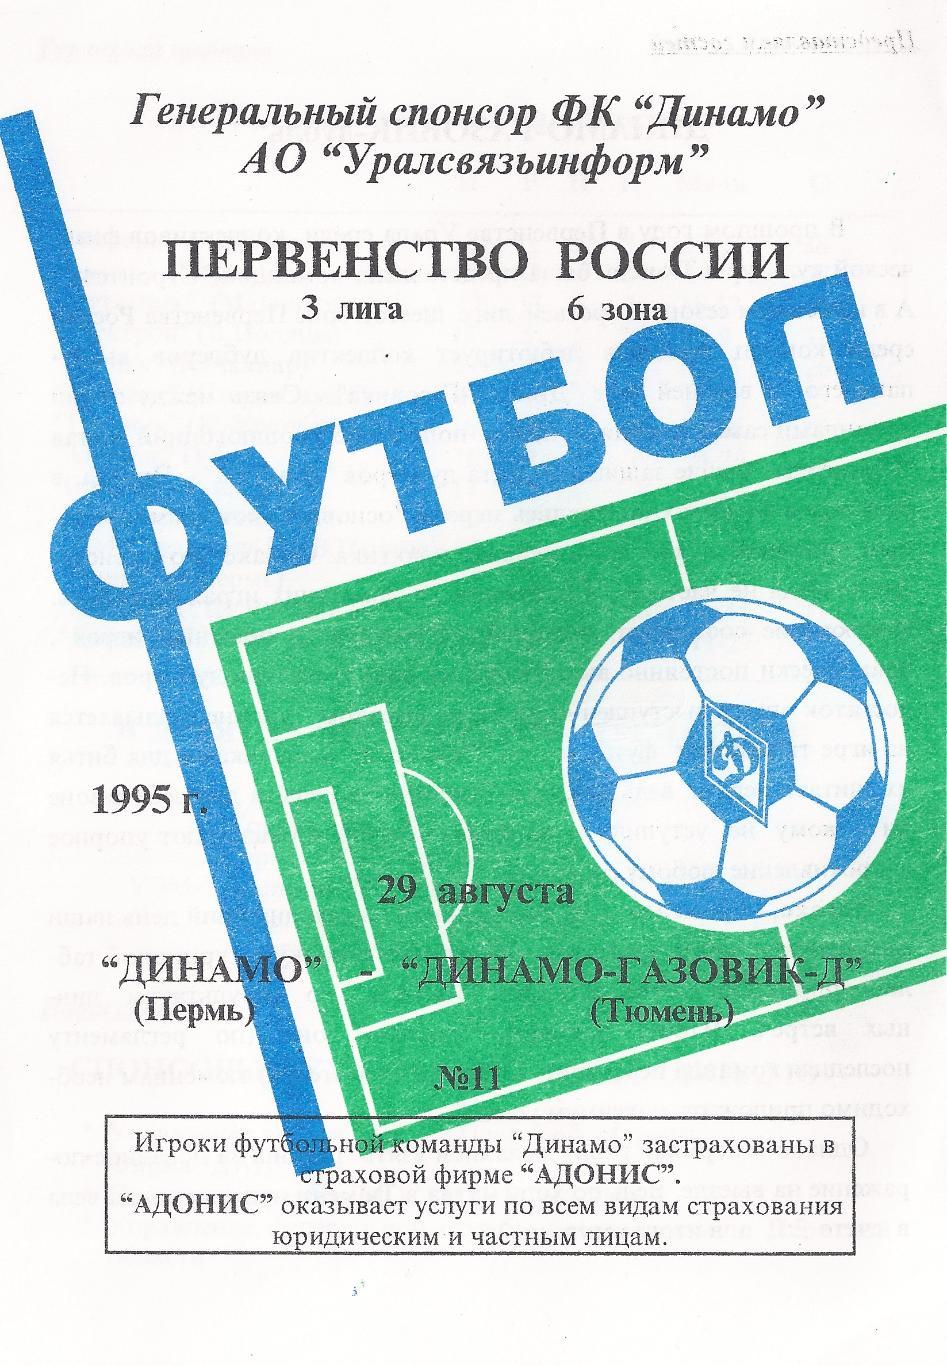 1995 - Динамо Пермь - Динамо-Газовик-Д Тюмень